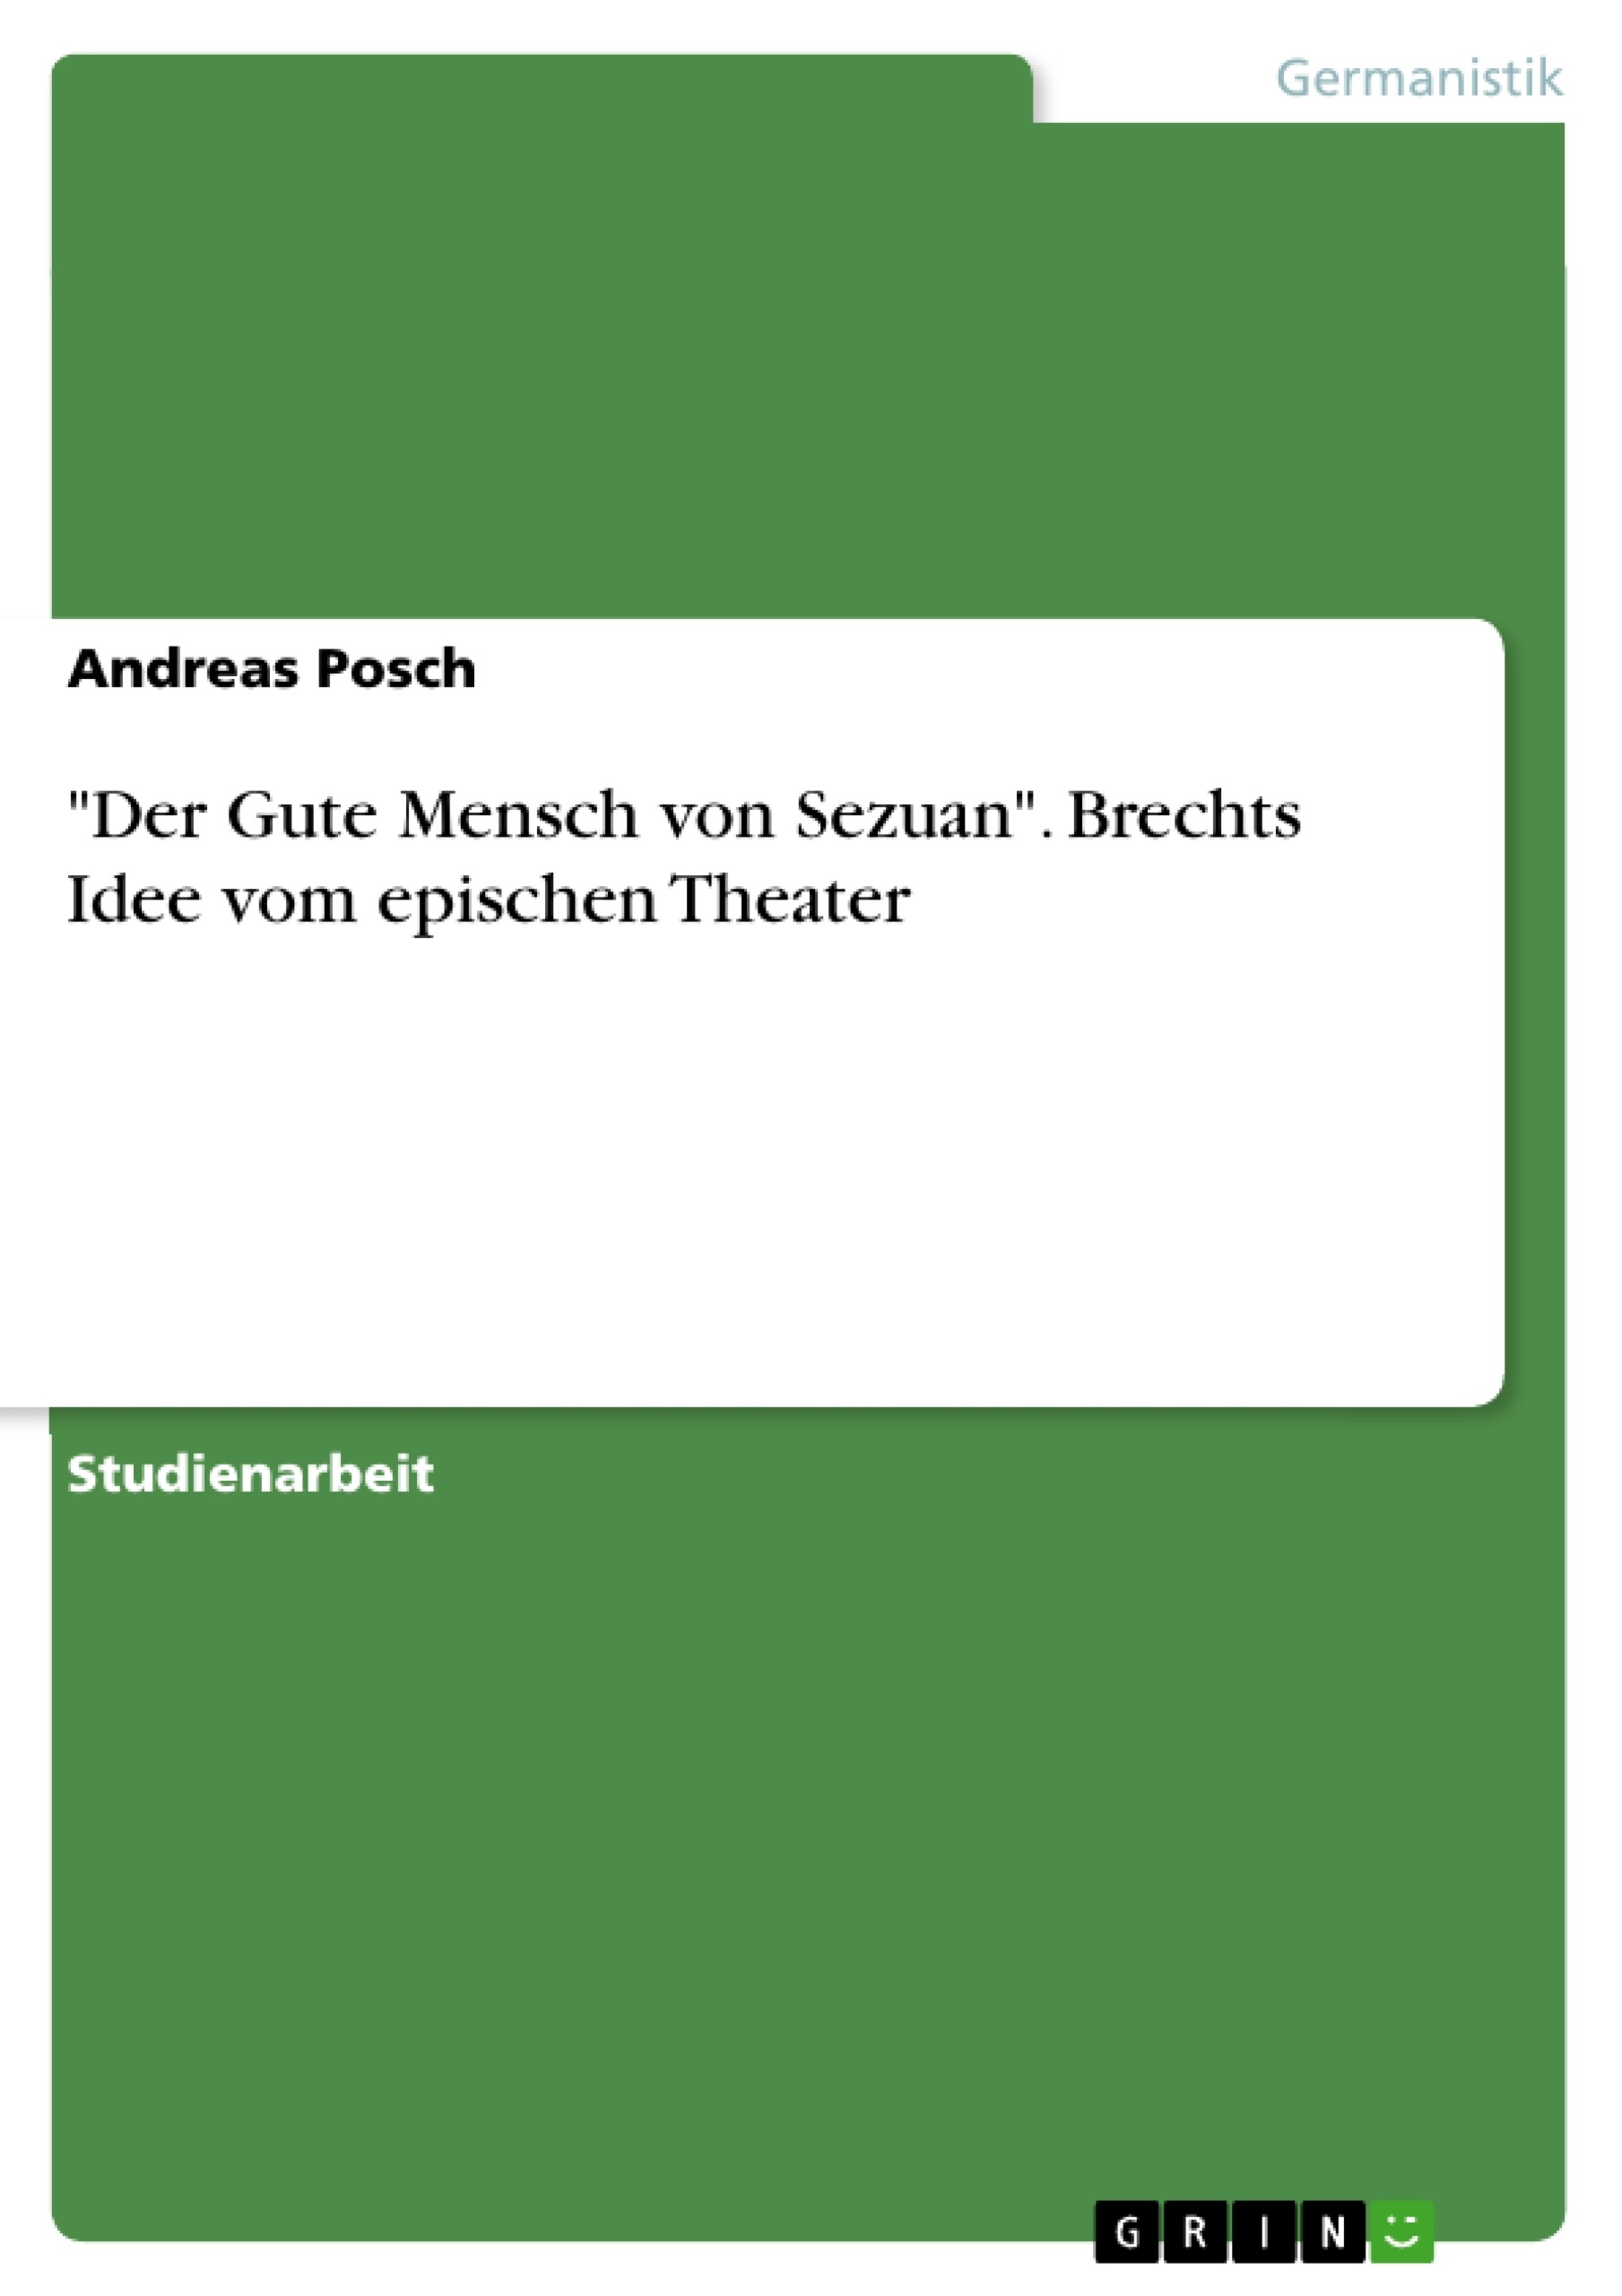 Title: "Der Gute Mensch von Sezuan". Brechts Idee vom epischen Theater